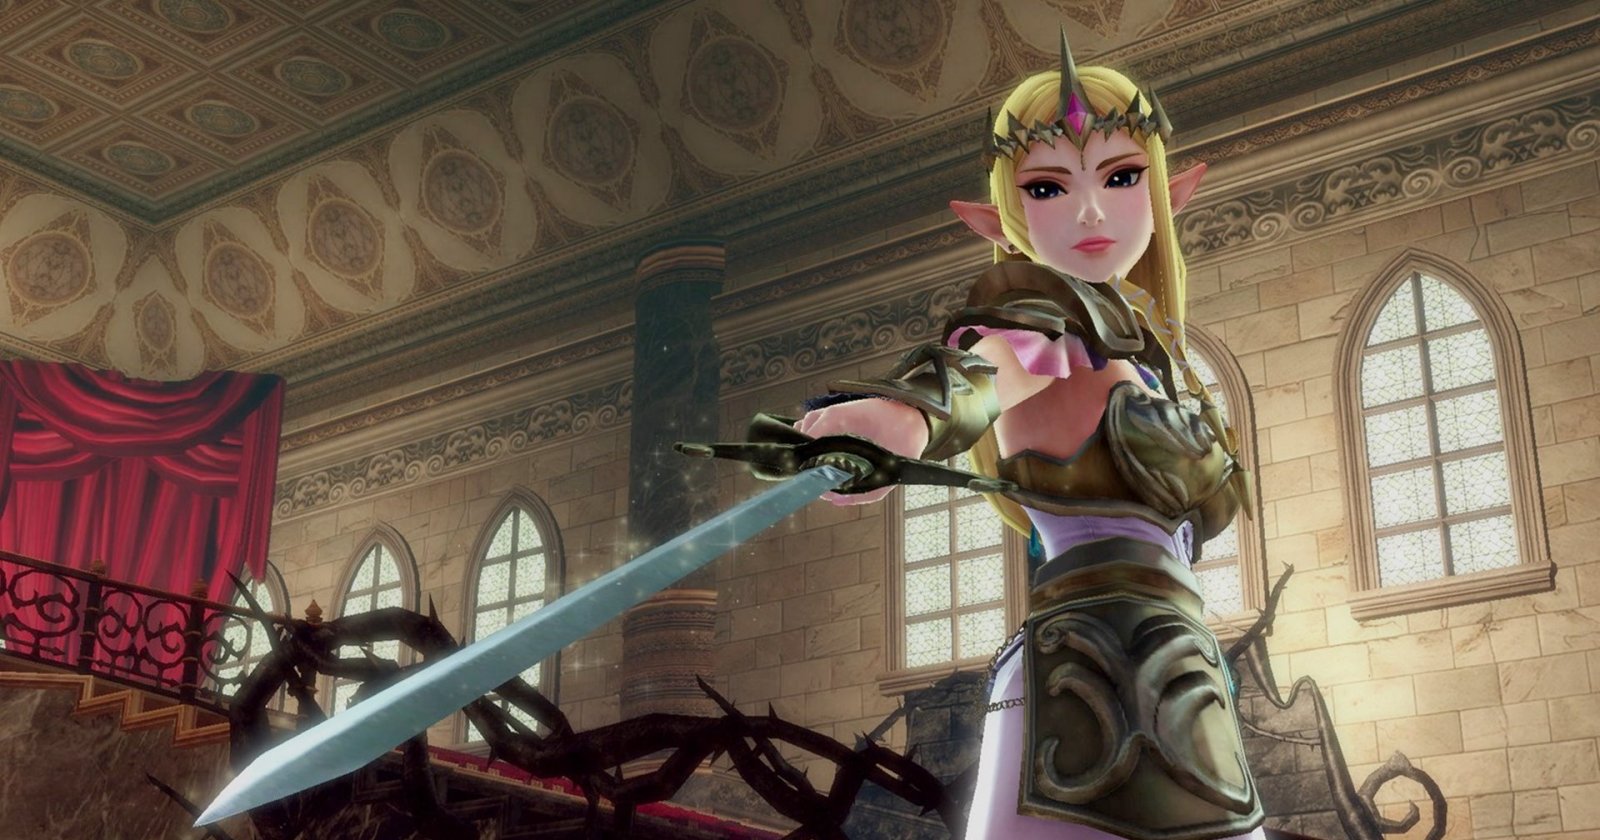 ผู้สร้างพูดถึงความเป็นไปได้ที่ เจ้าหญิง ‘Zelda’ จะมาเป็นตัวเอกในเกม